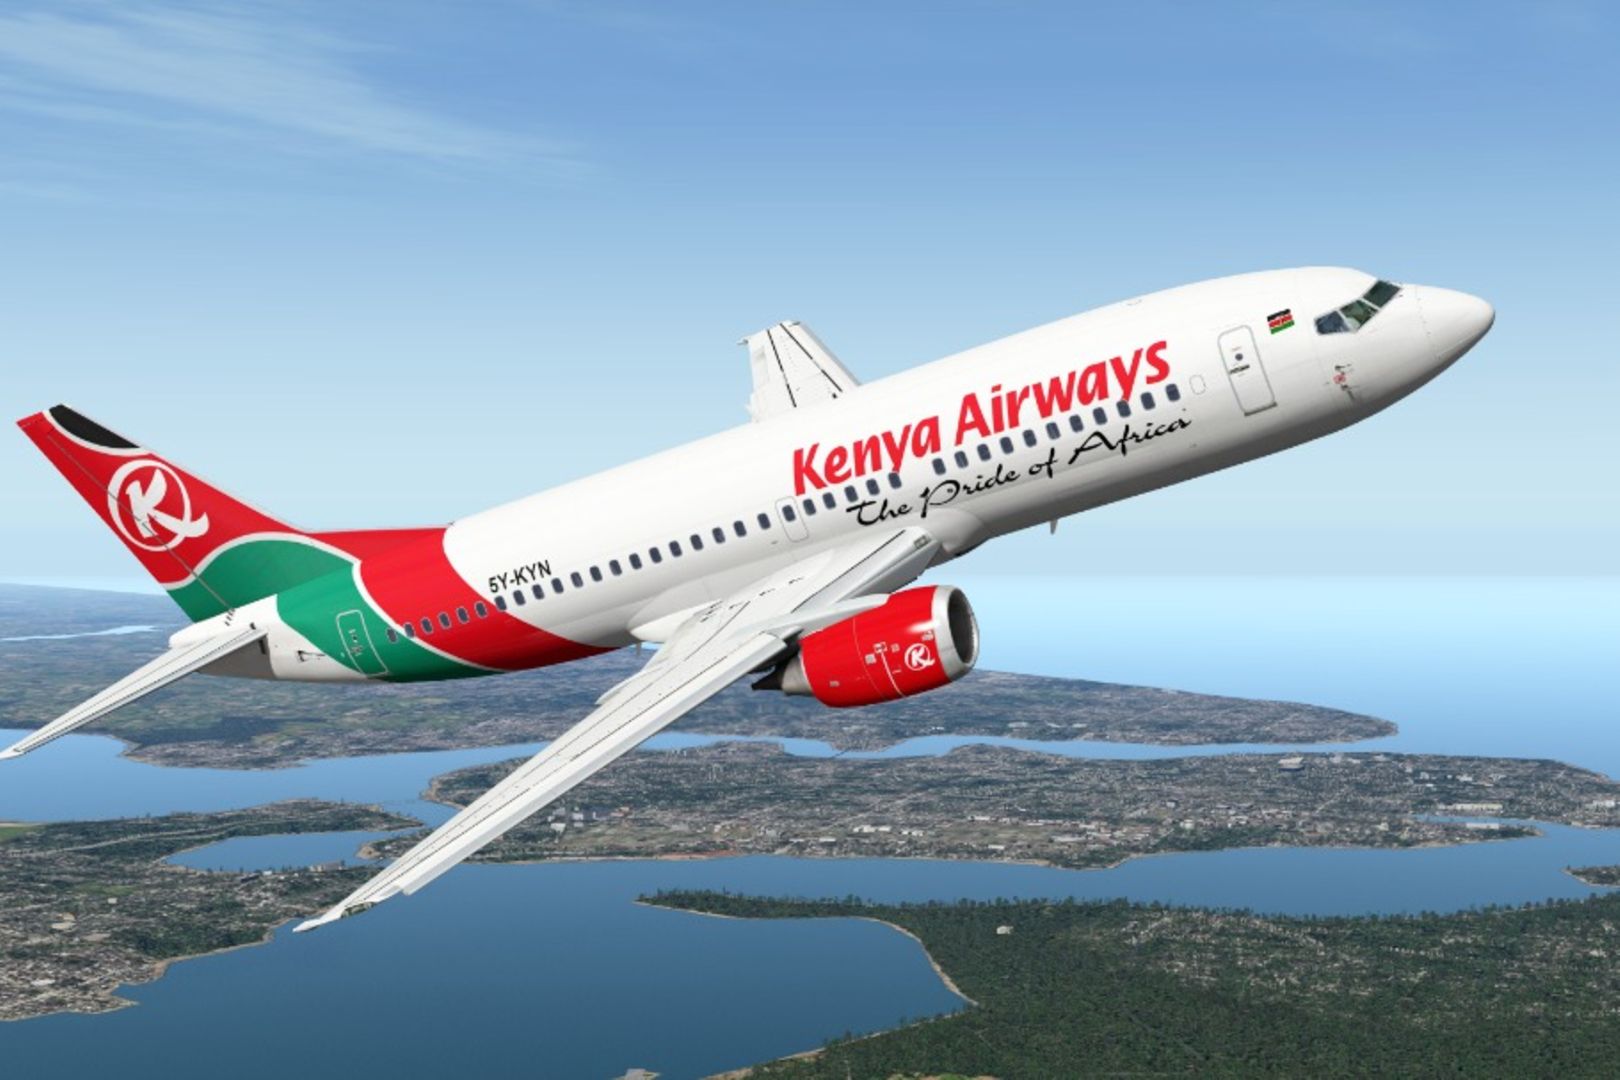 Des responsables syndicaux de Kenya Airways appelés à comparaitre devant la justice